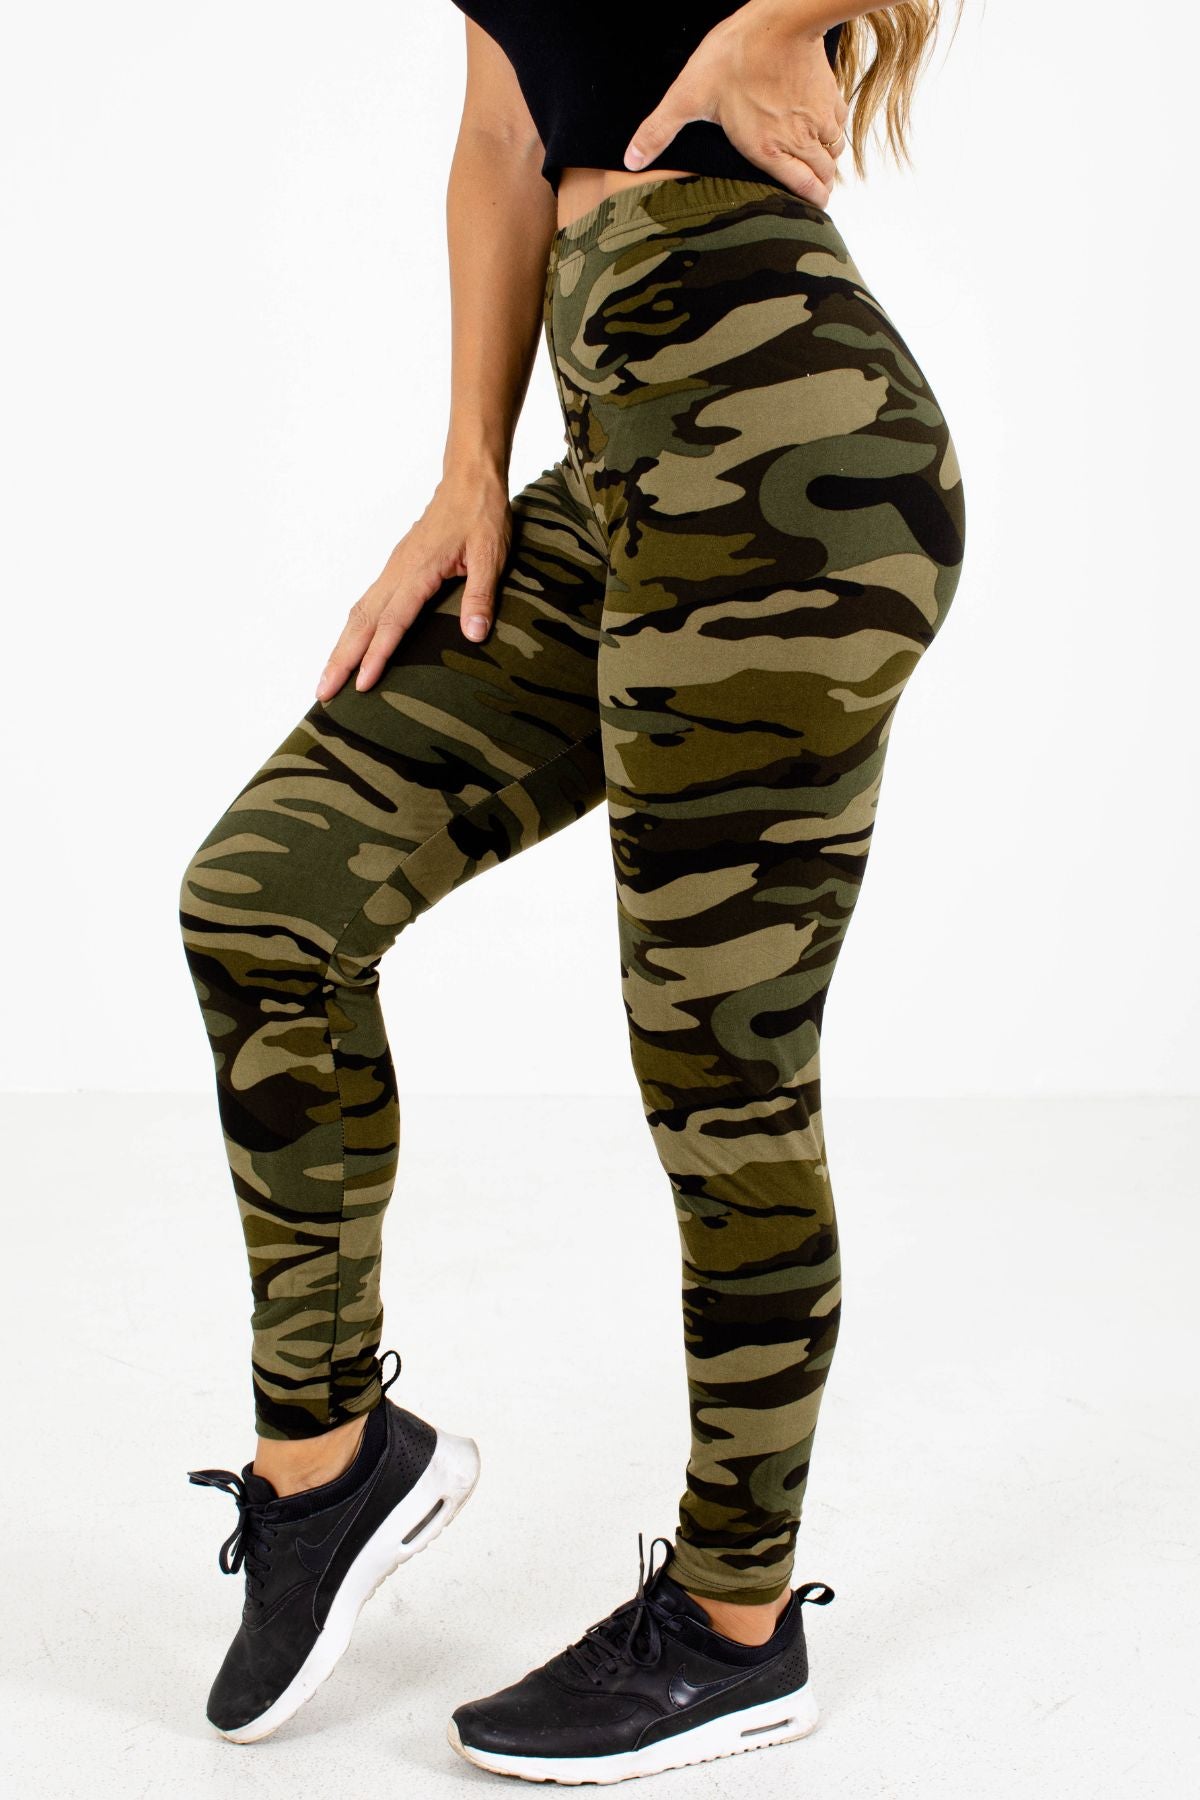 Green Camo Print Boutique Activewear Leggings for Women